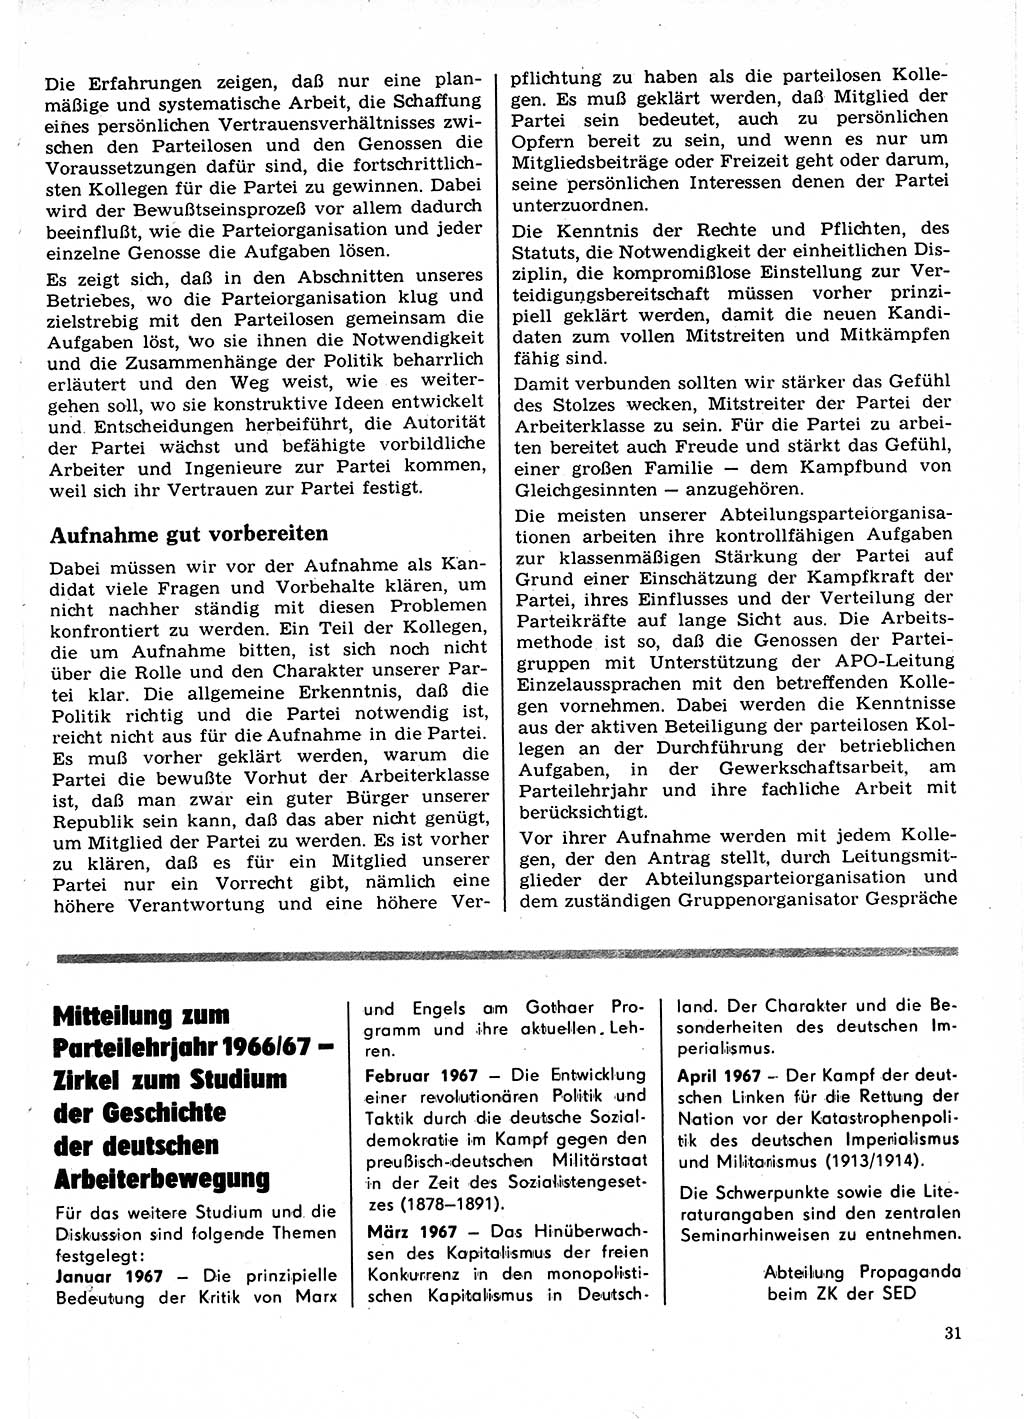 Neuer Weg (NW), Organ des Zentralkomitees (ZK) der SED (Sozialistische Einheitspartei Deutschlands) für Fragen des Parteilebens, 22. Jahrgang [Deutsche Demokratische Republik (DDR)] 1967, Seite 31 (NW ZK SED DDR 1967, S. 31)